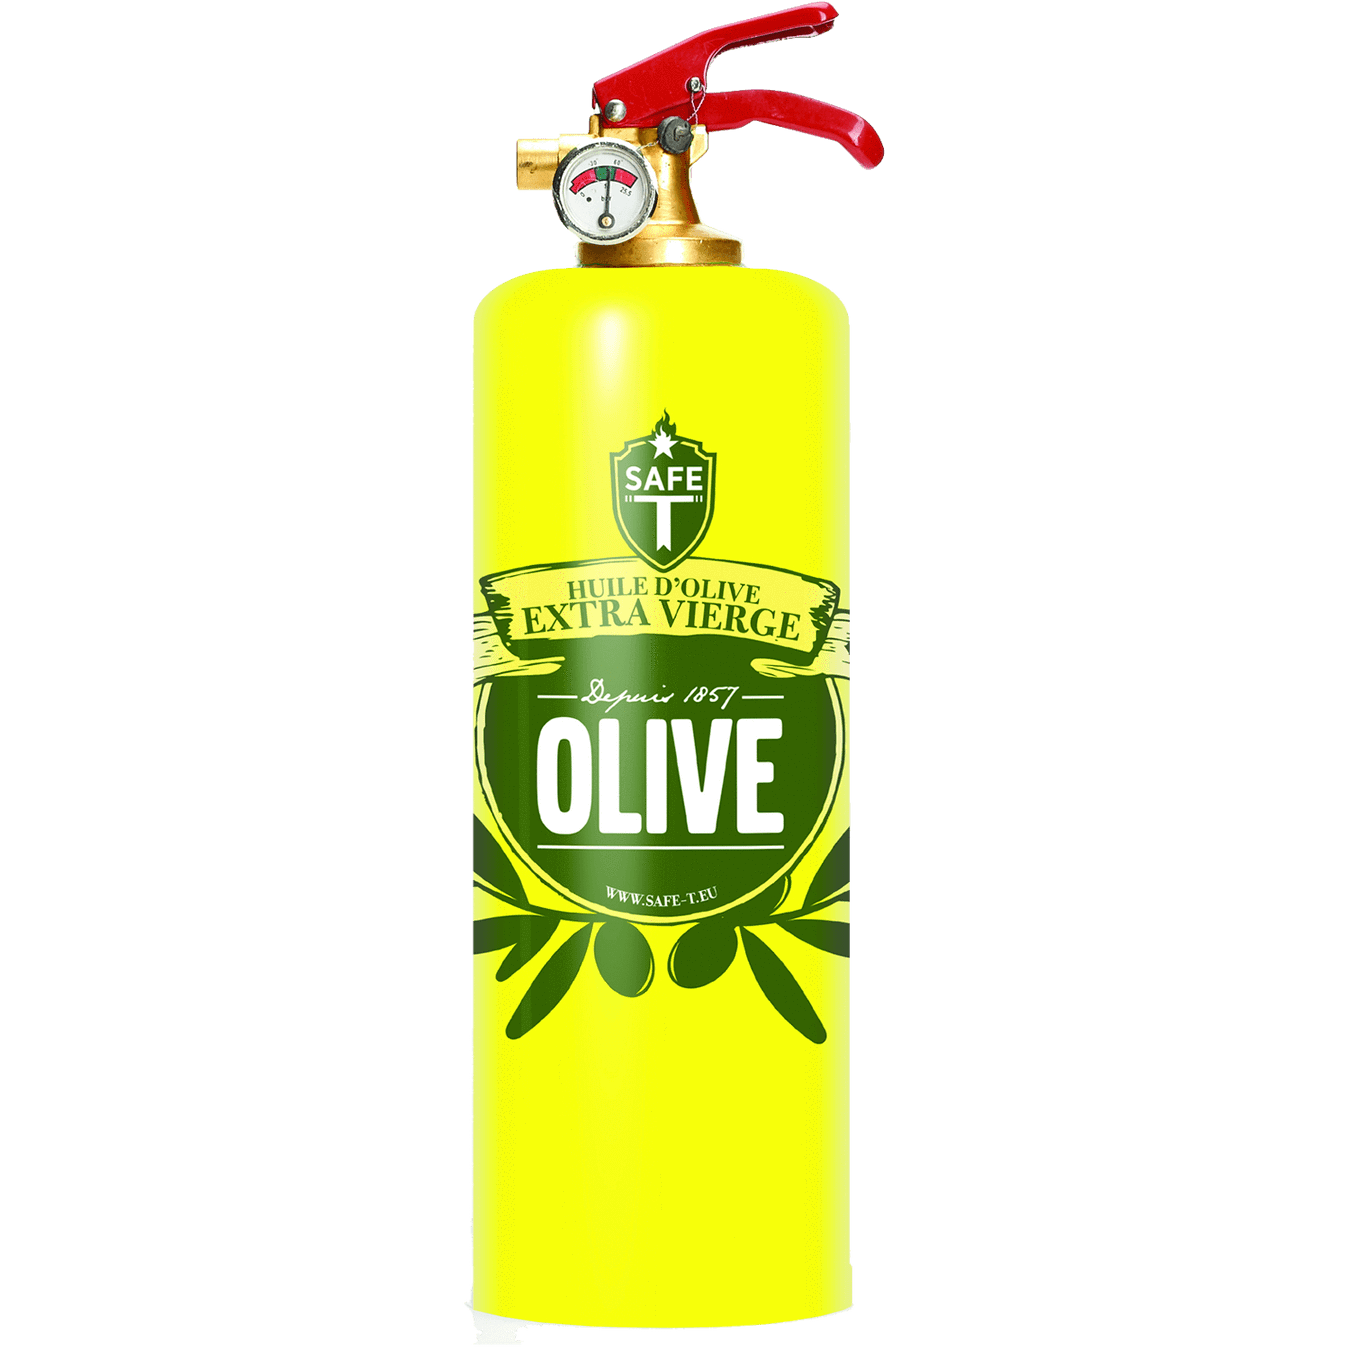 Safe-T Designer Fire Extinguisher olive unique housewarming gift